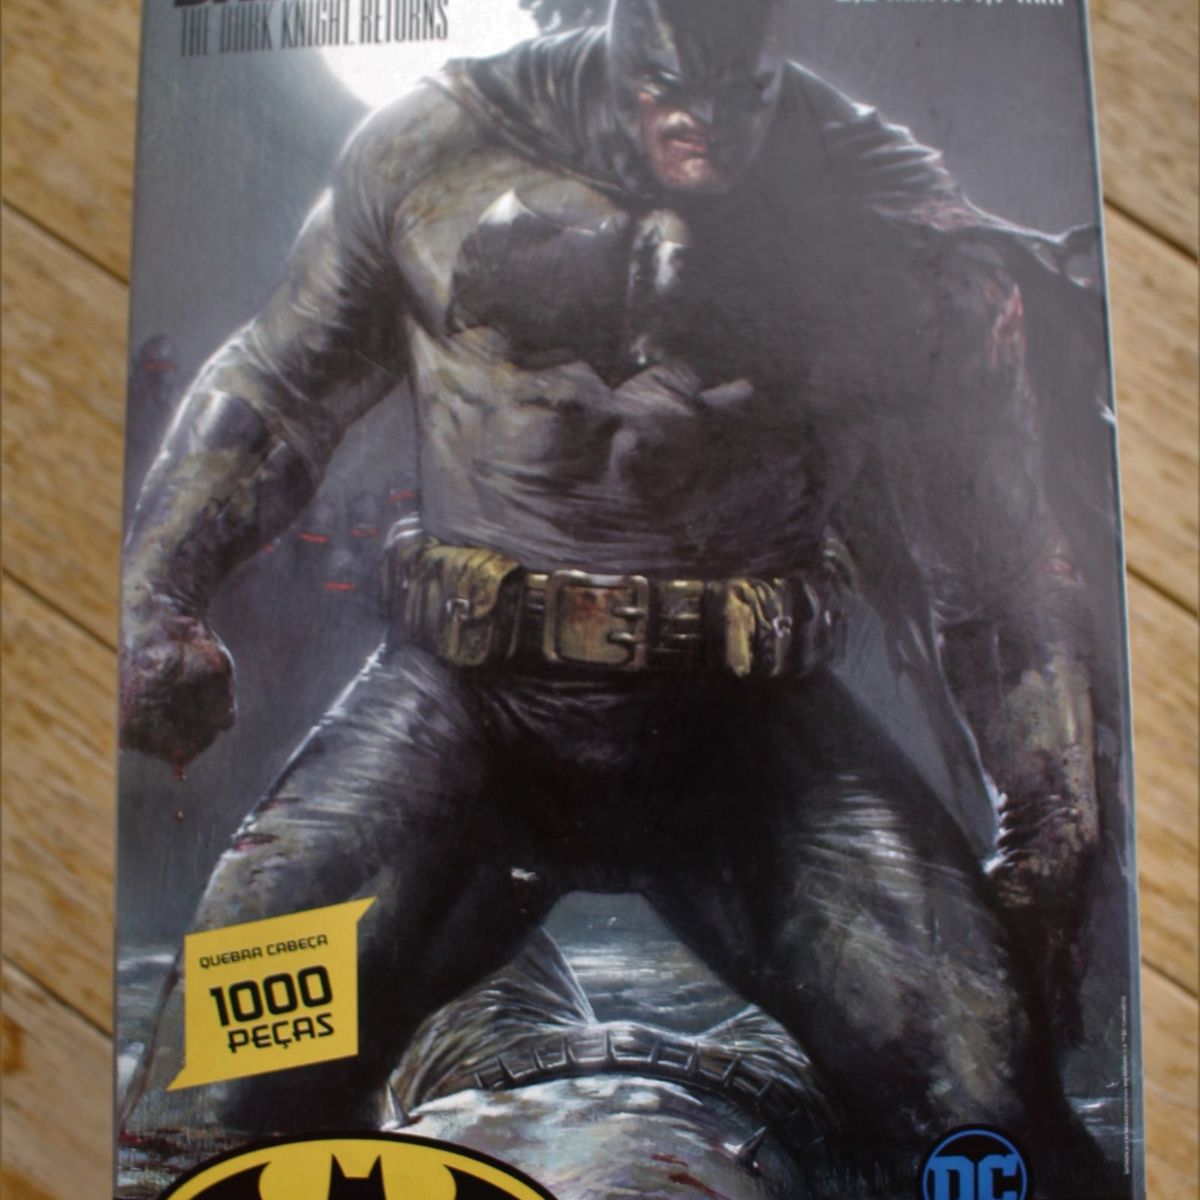 Quebra-cabeça Batman 516143 Original: Compra Online em Oferta